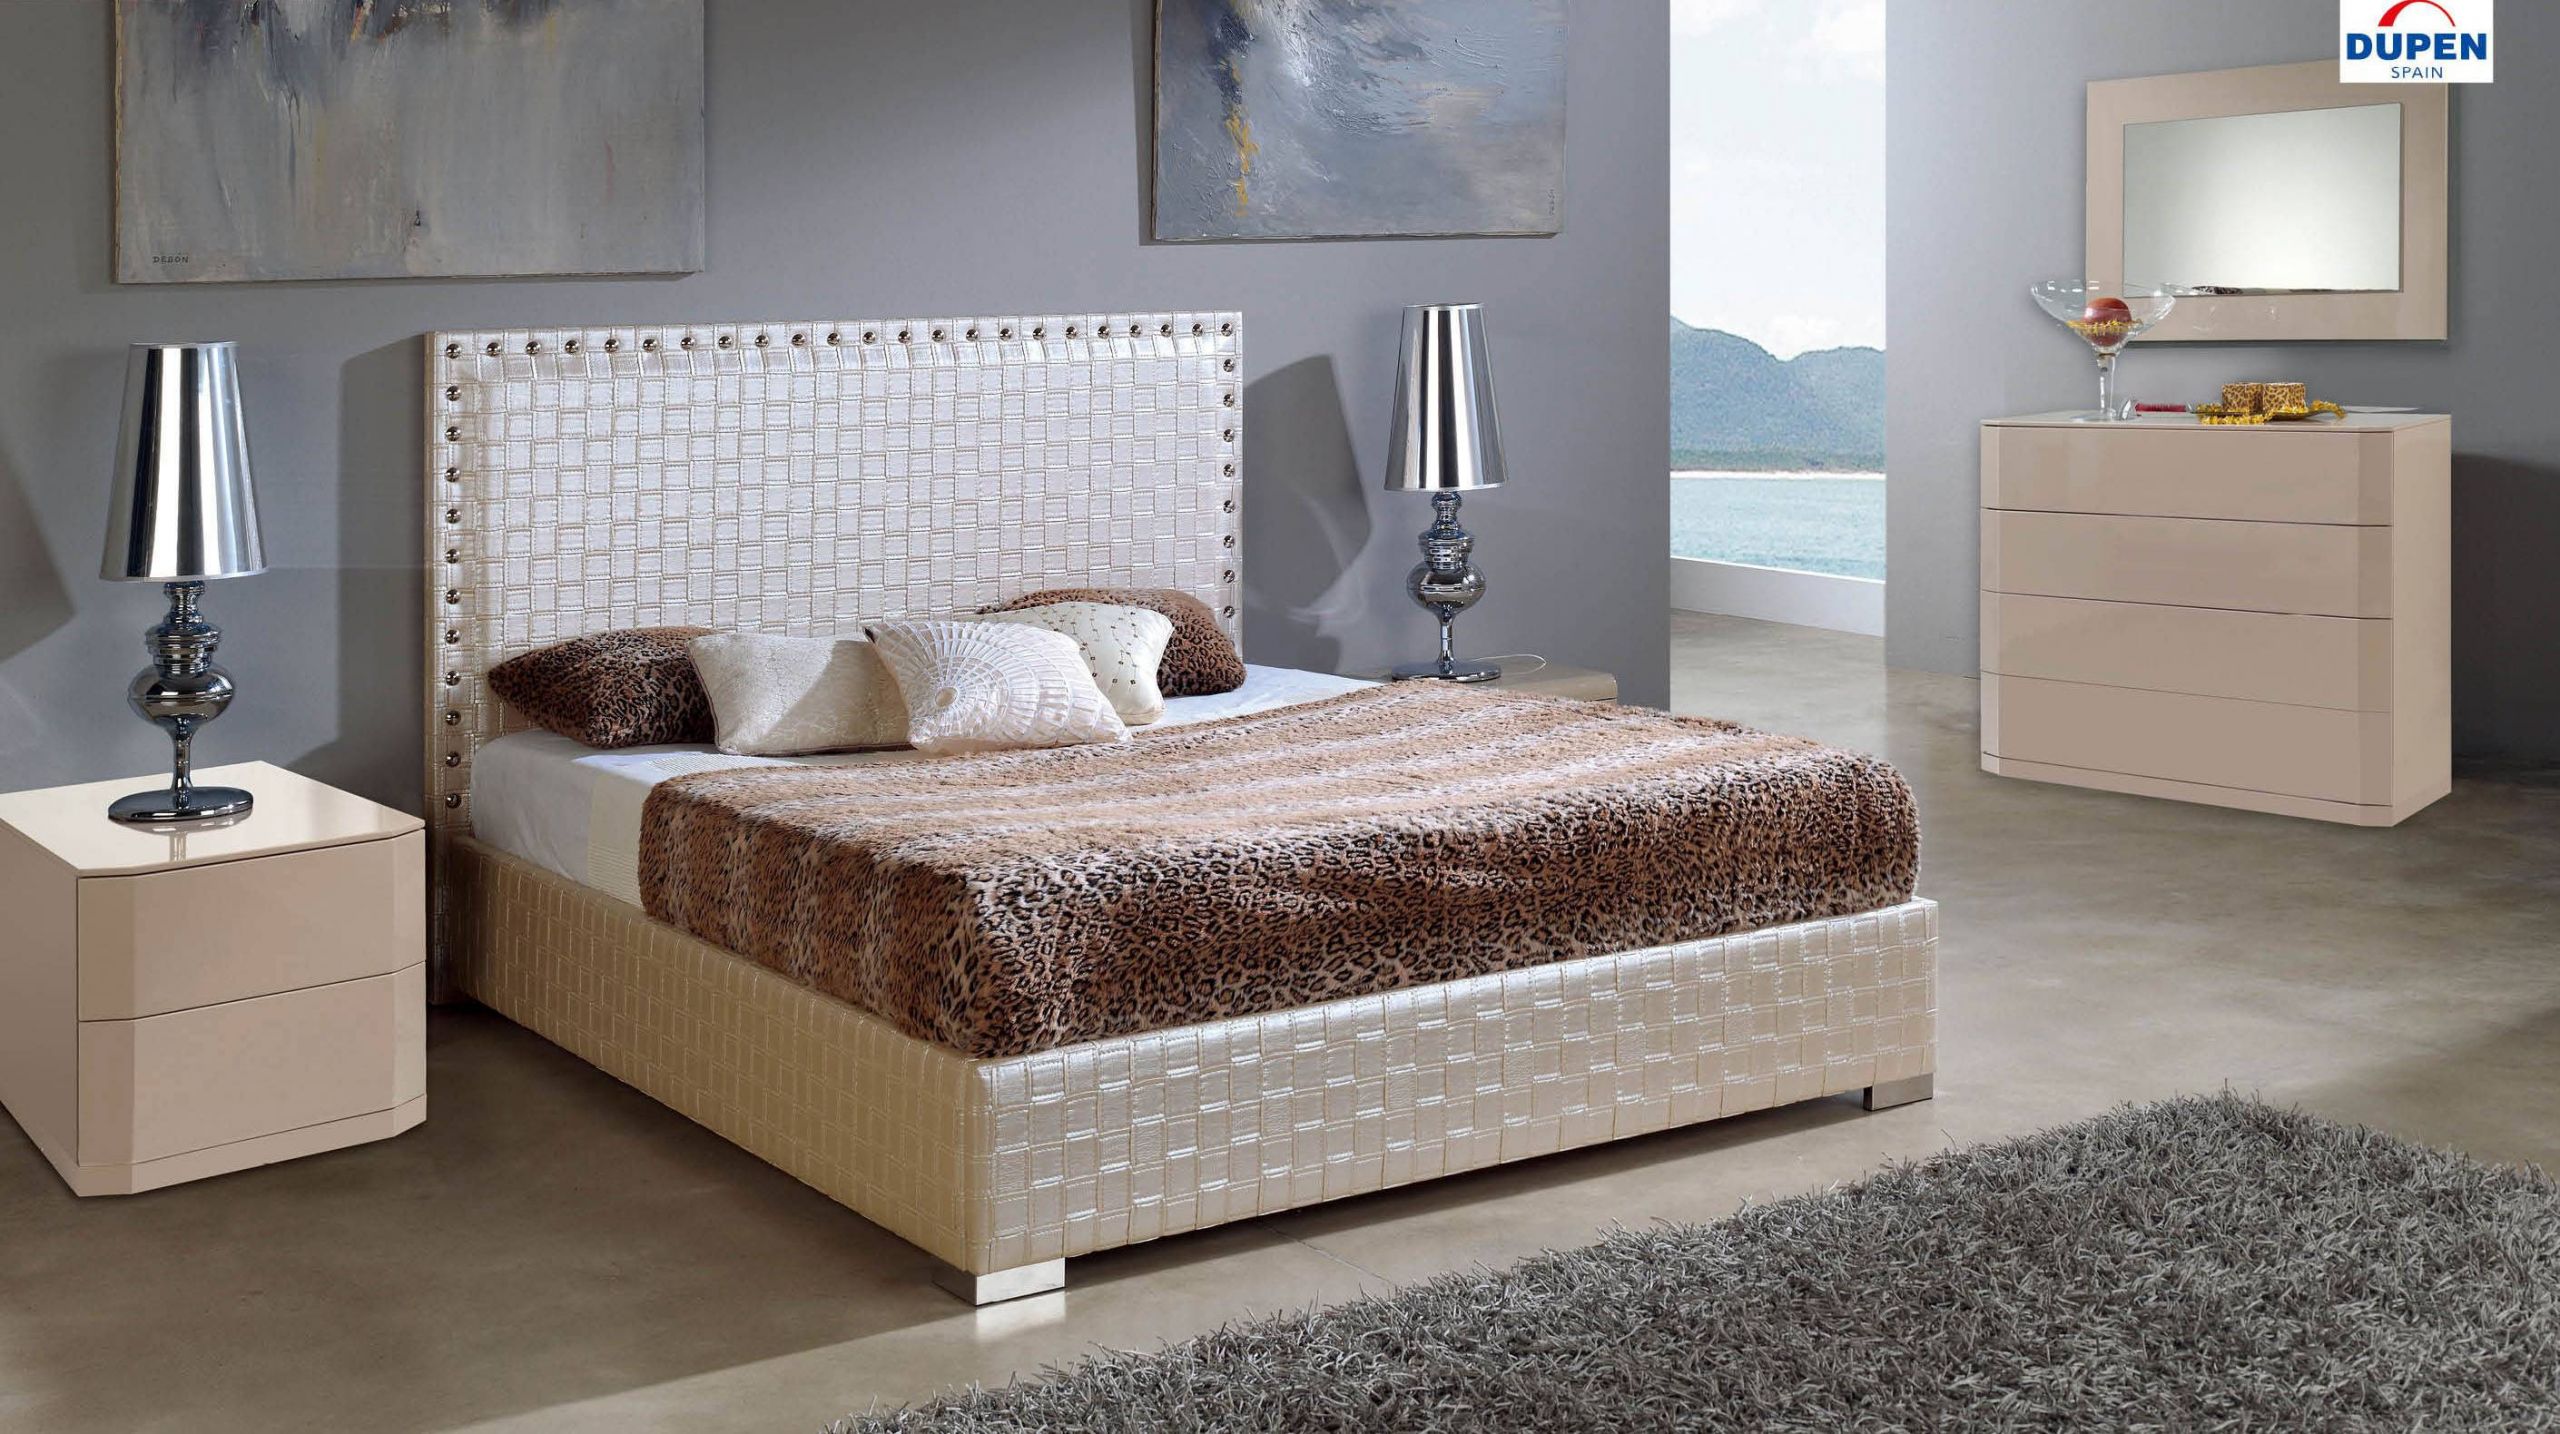 Modern Platform Bedroom Sets
 Made in Spain Leather Contemporary Platform Bedroom Sets